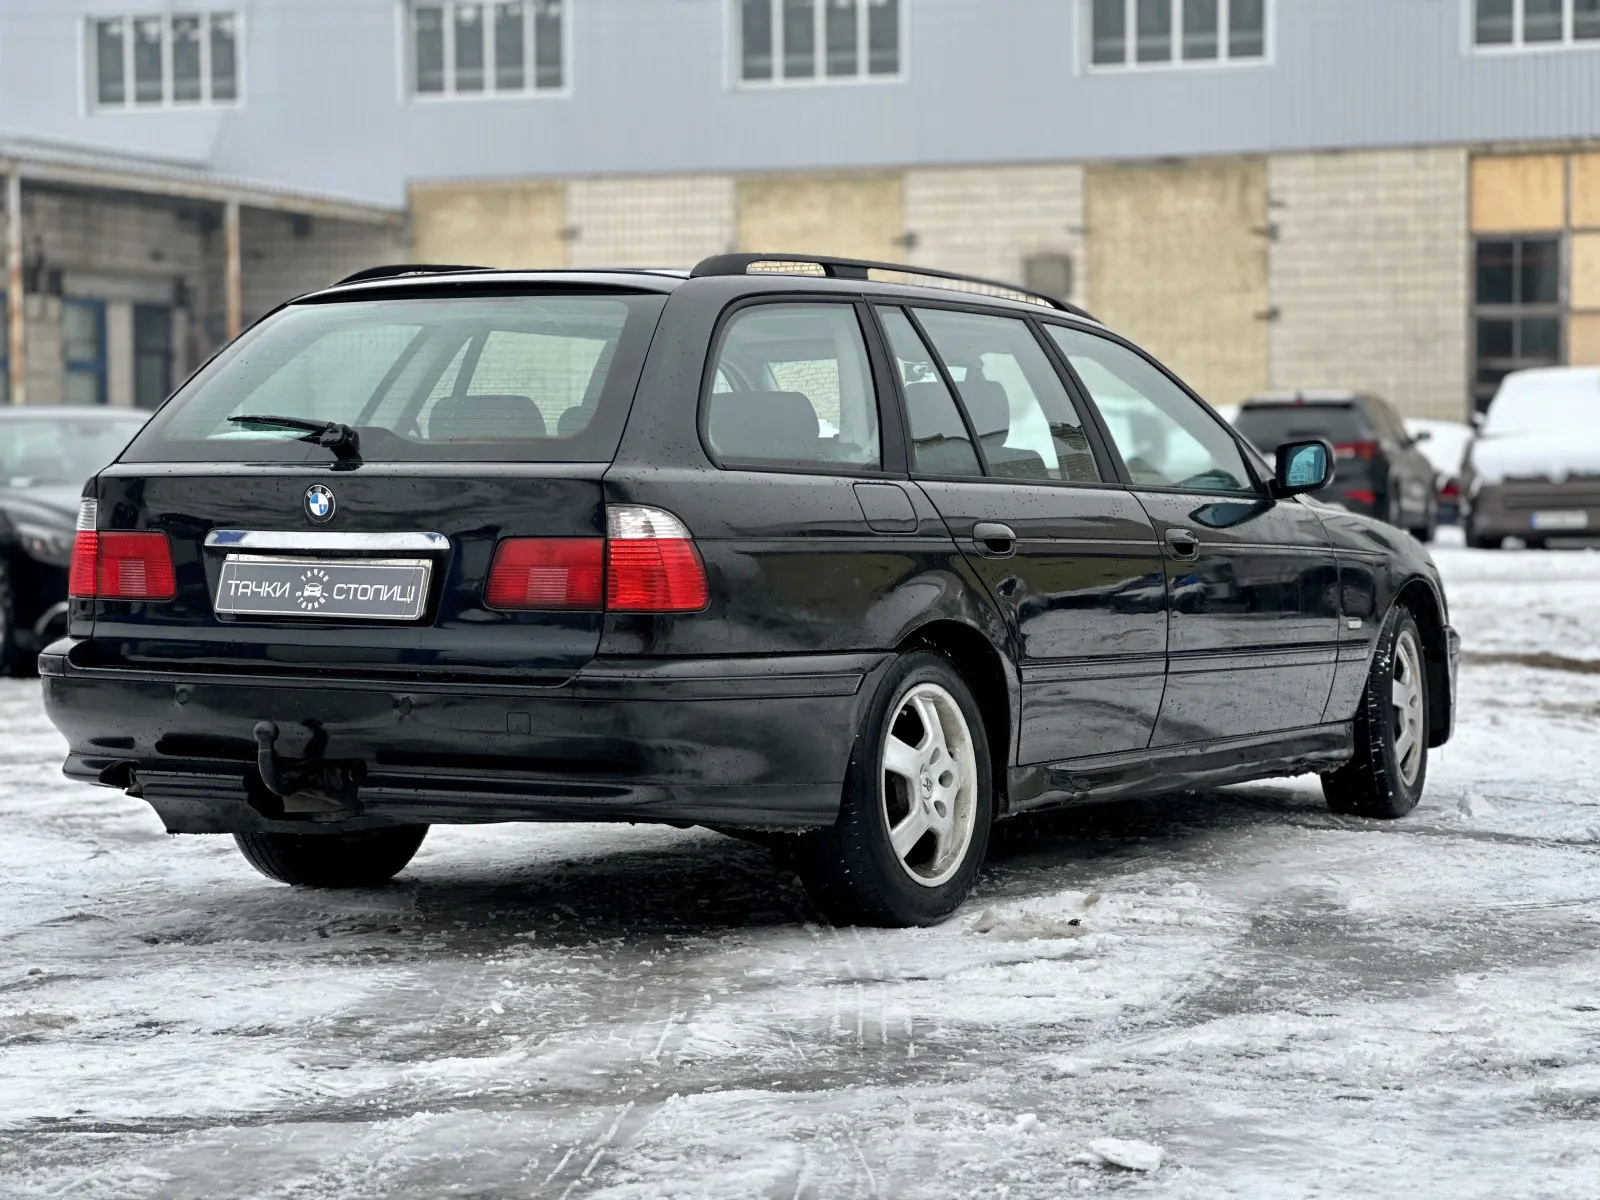 BMW 5 Series 2001 купити в лізинг